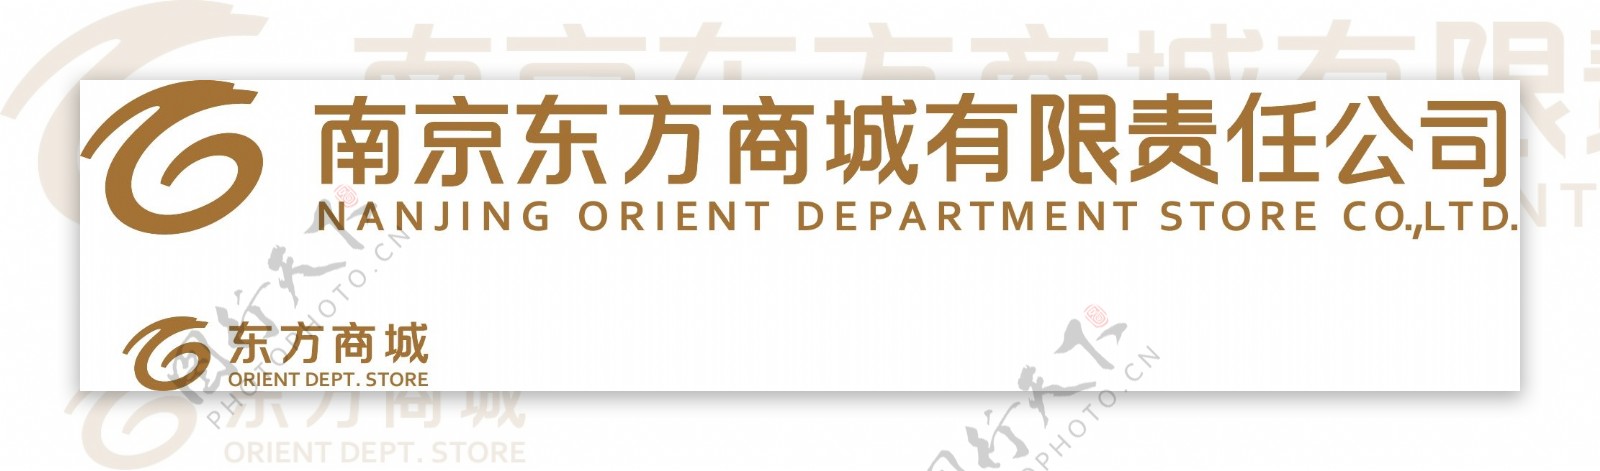 东方商城logo图片